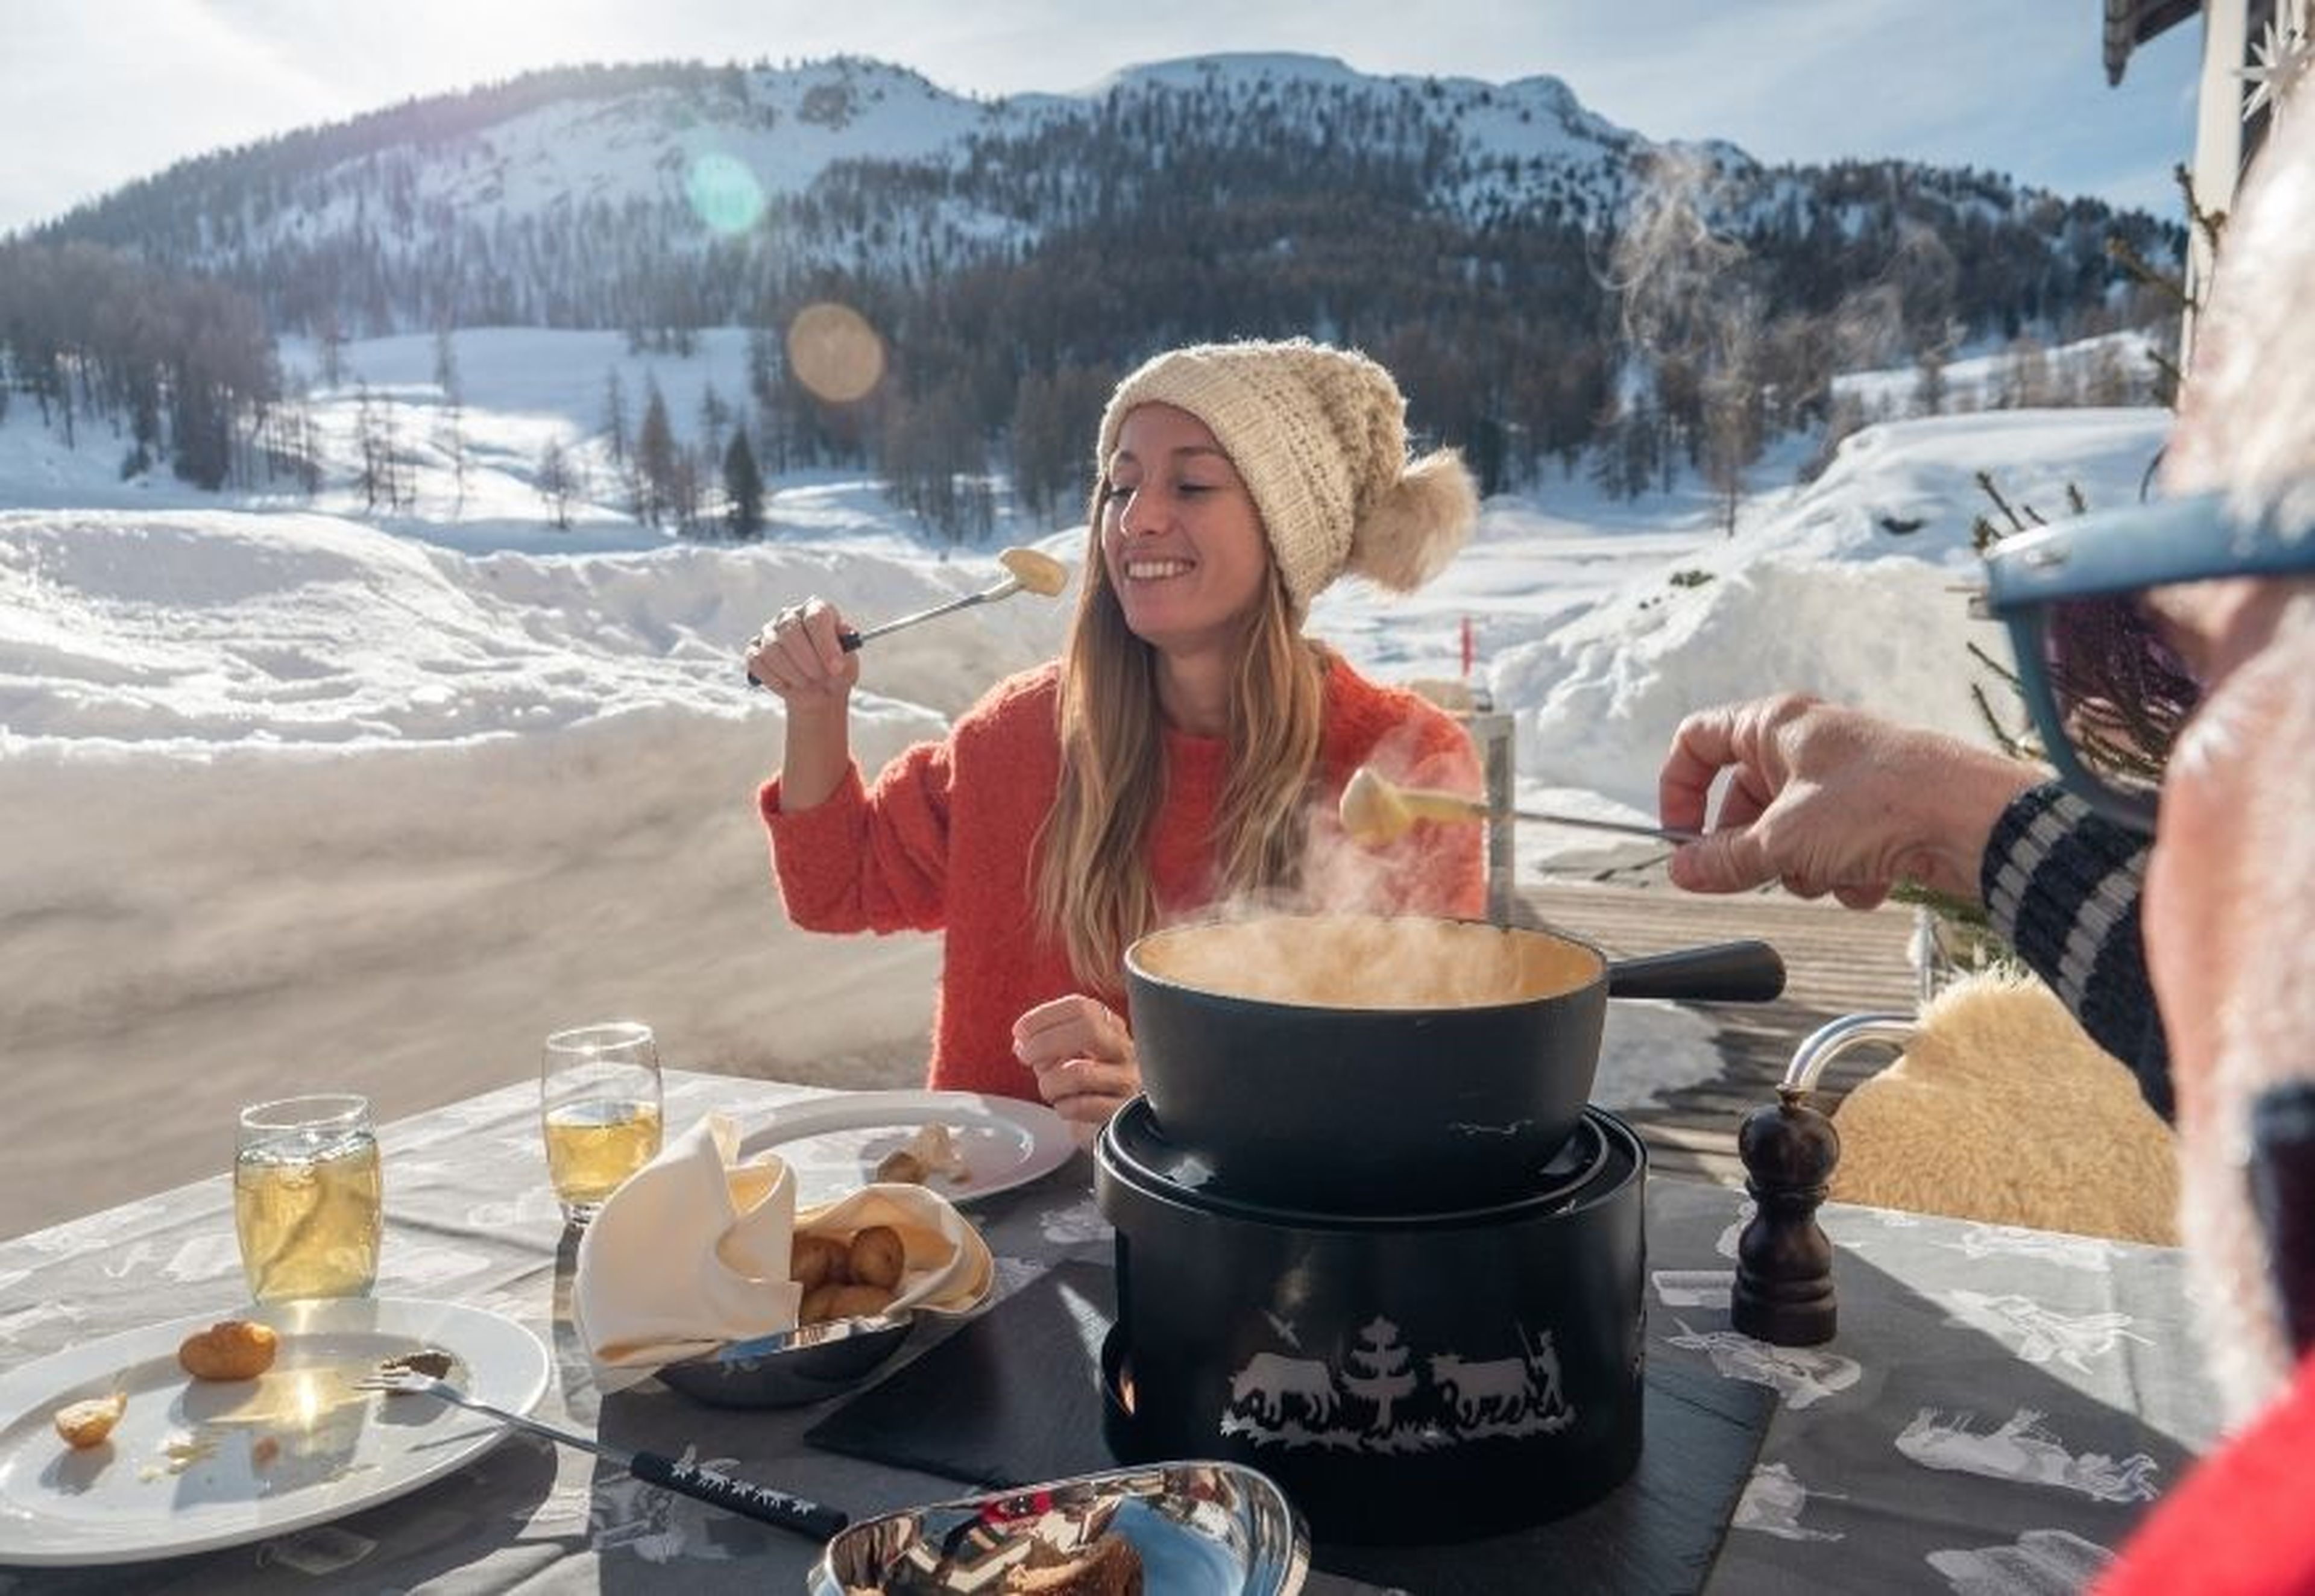 Una pareja come una fondue de queso en la nieve.